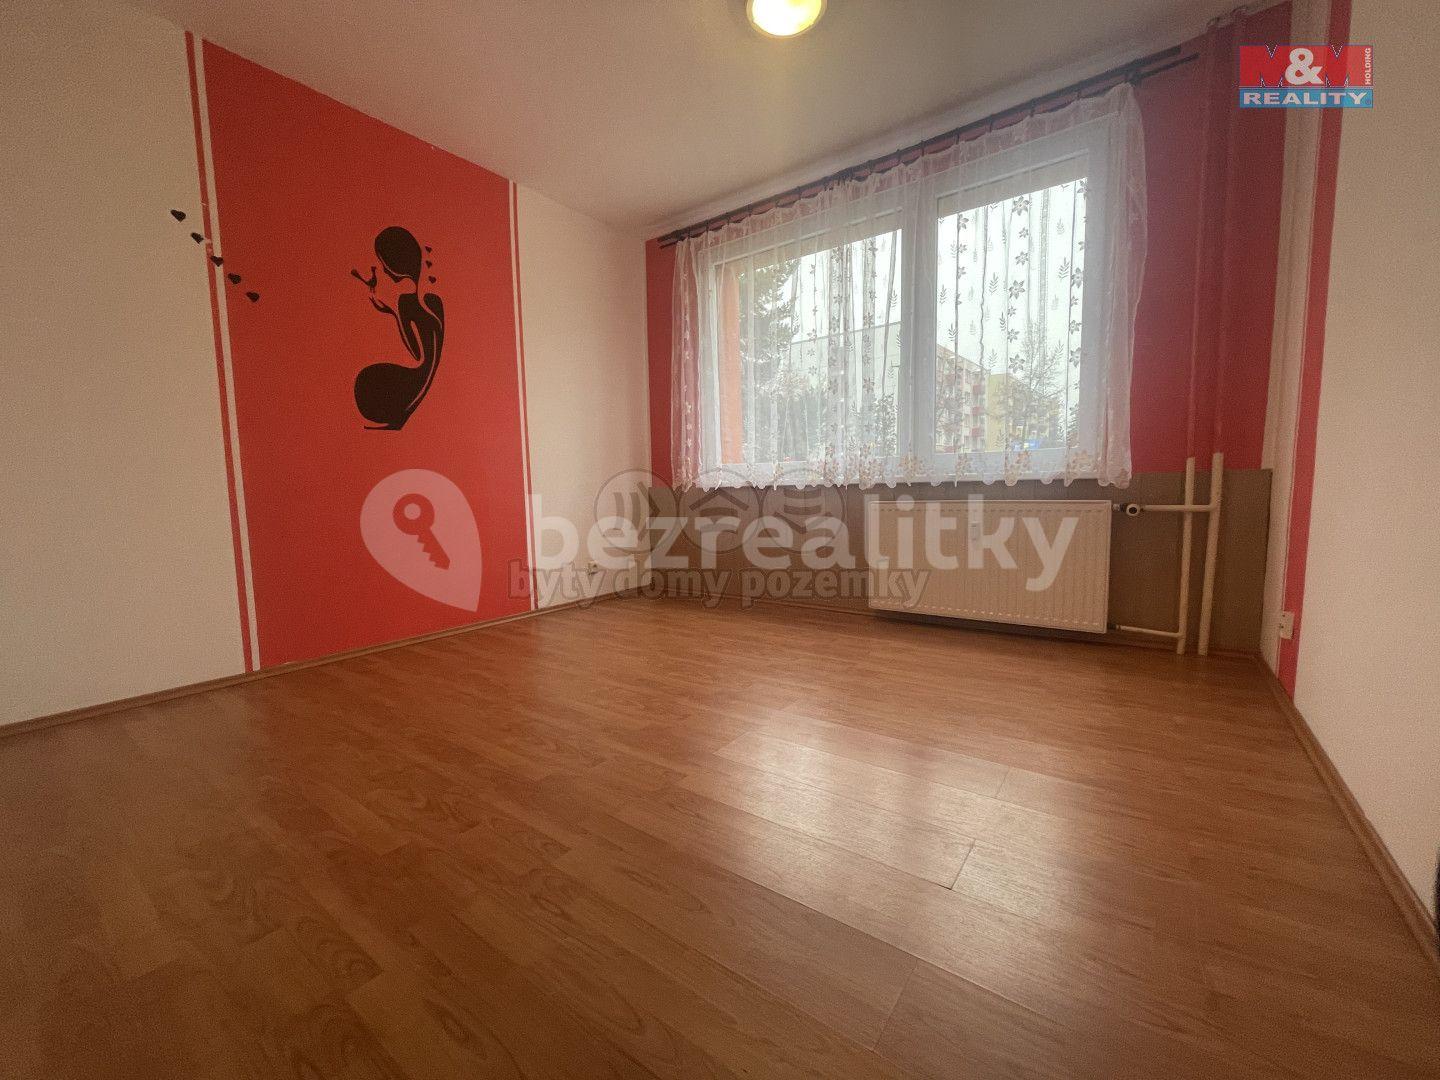 3 bedroom flat for sale, 72 m², Na Bílé husi, Blatná, Jihočeský Region